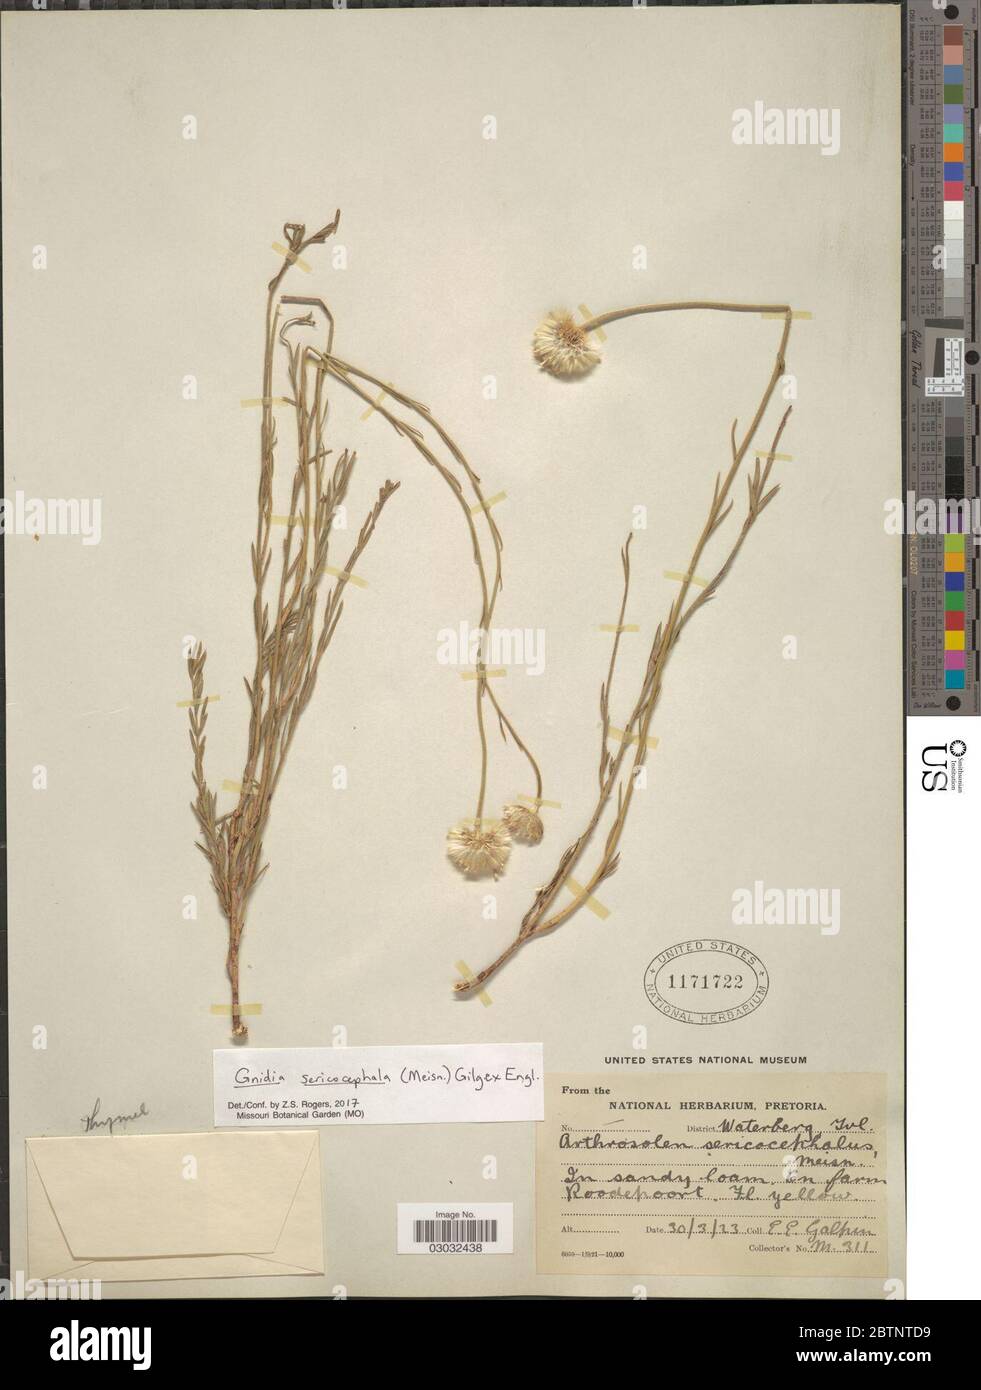 Gnidia sericocephala Meisn Gilg ex Engl. Stock Photo